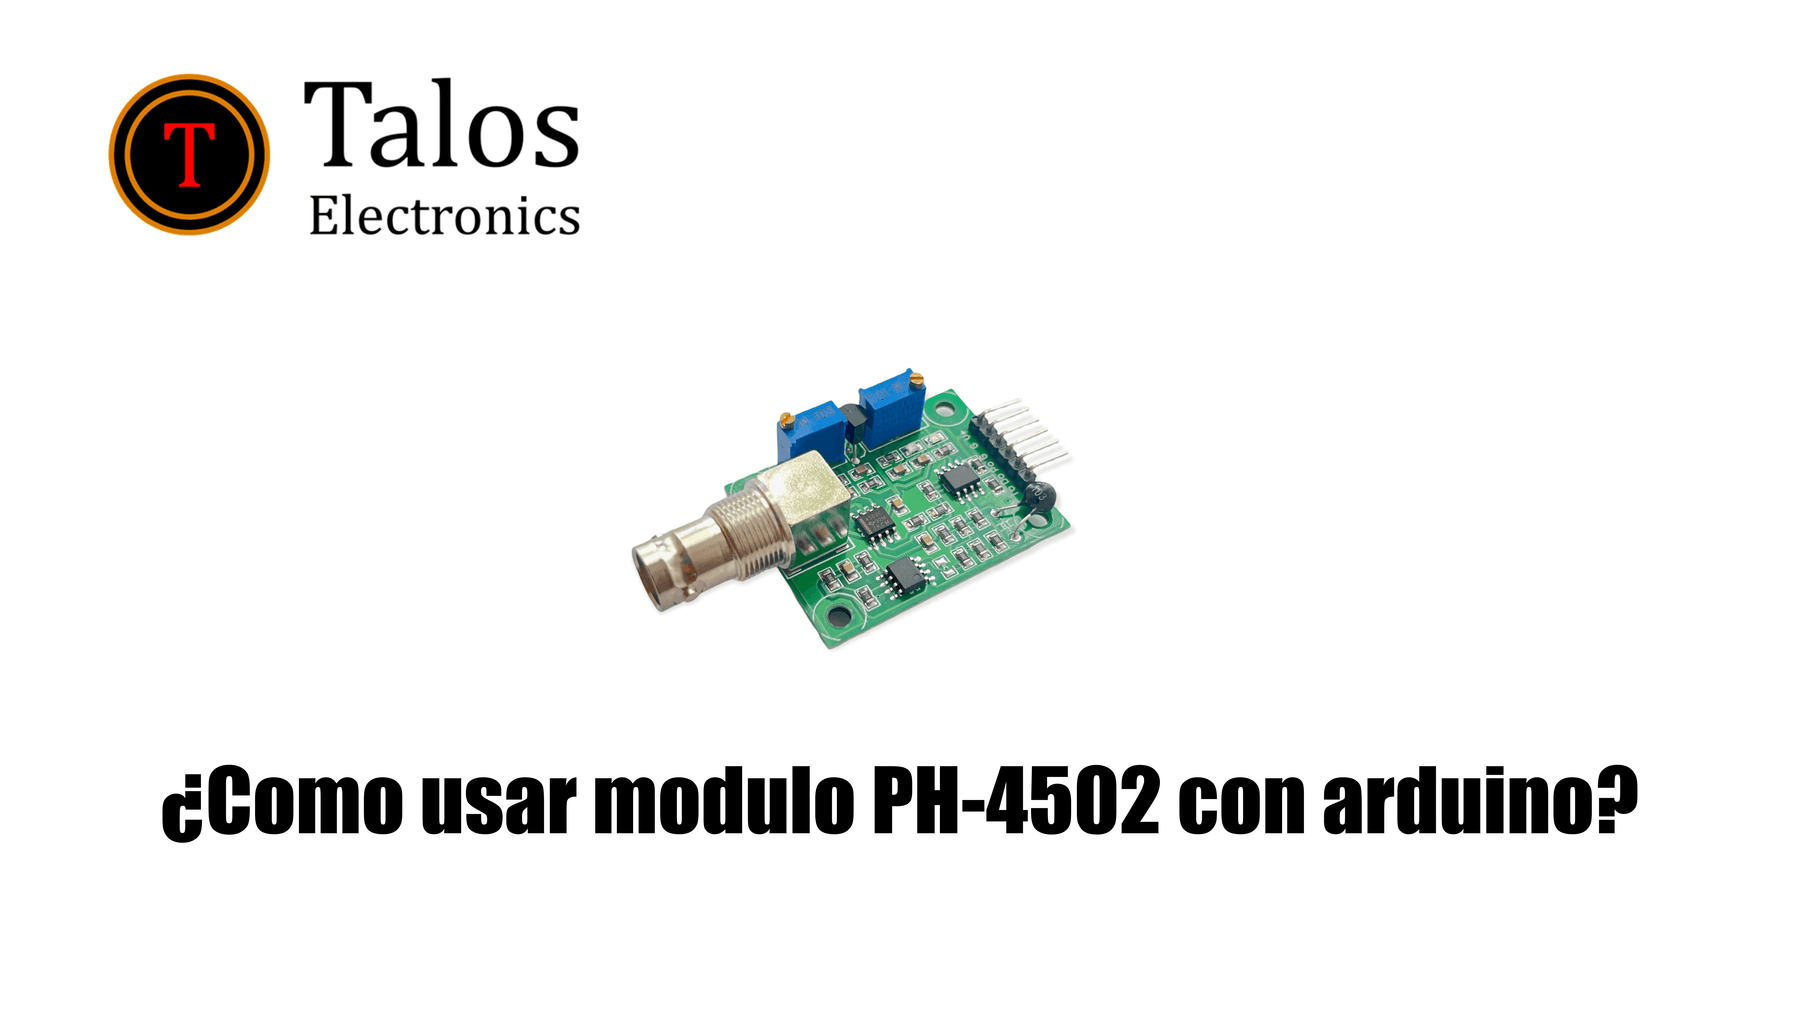 ¿Como usar modulo PH-4502 con arduino?